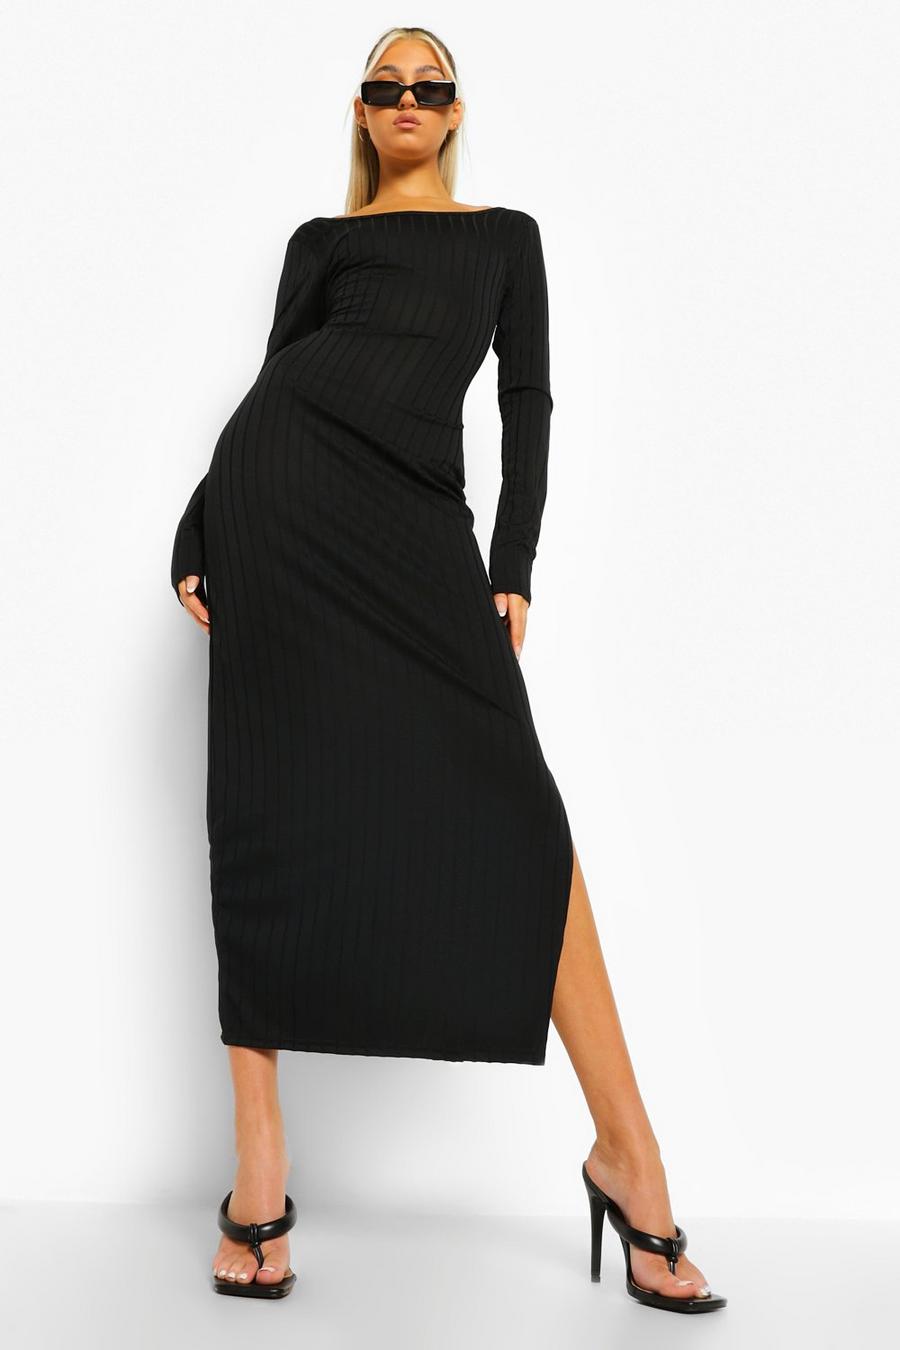 שחור שמלת מידקסי ארוגה עם צווארון עגול וגב פתוח לנשים גבוהות image number 1